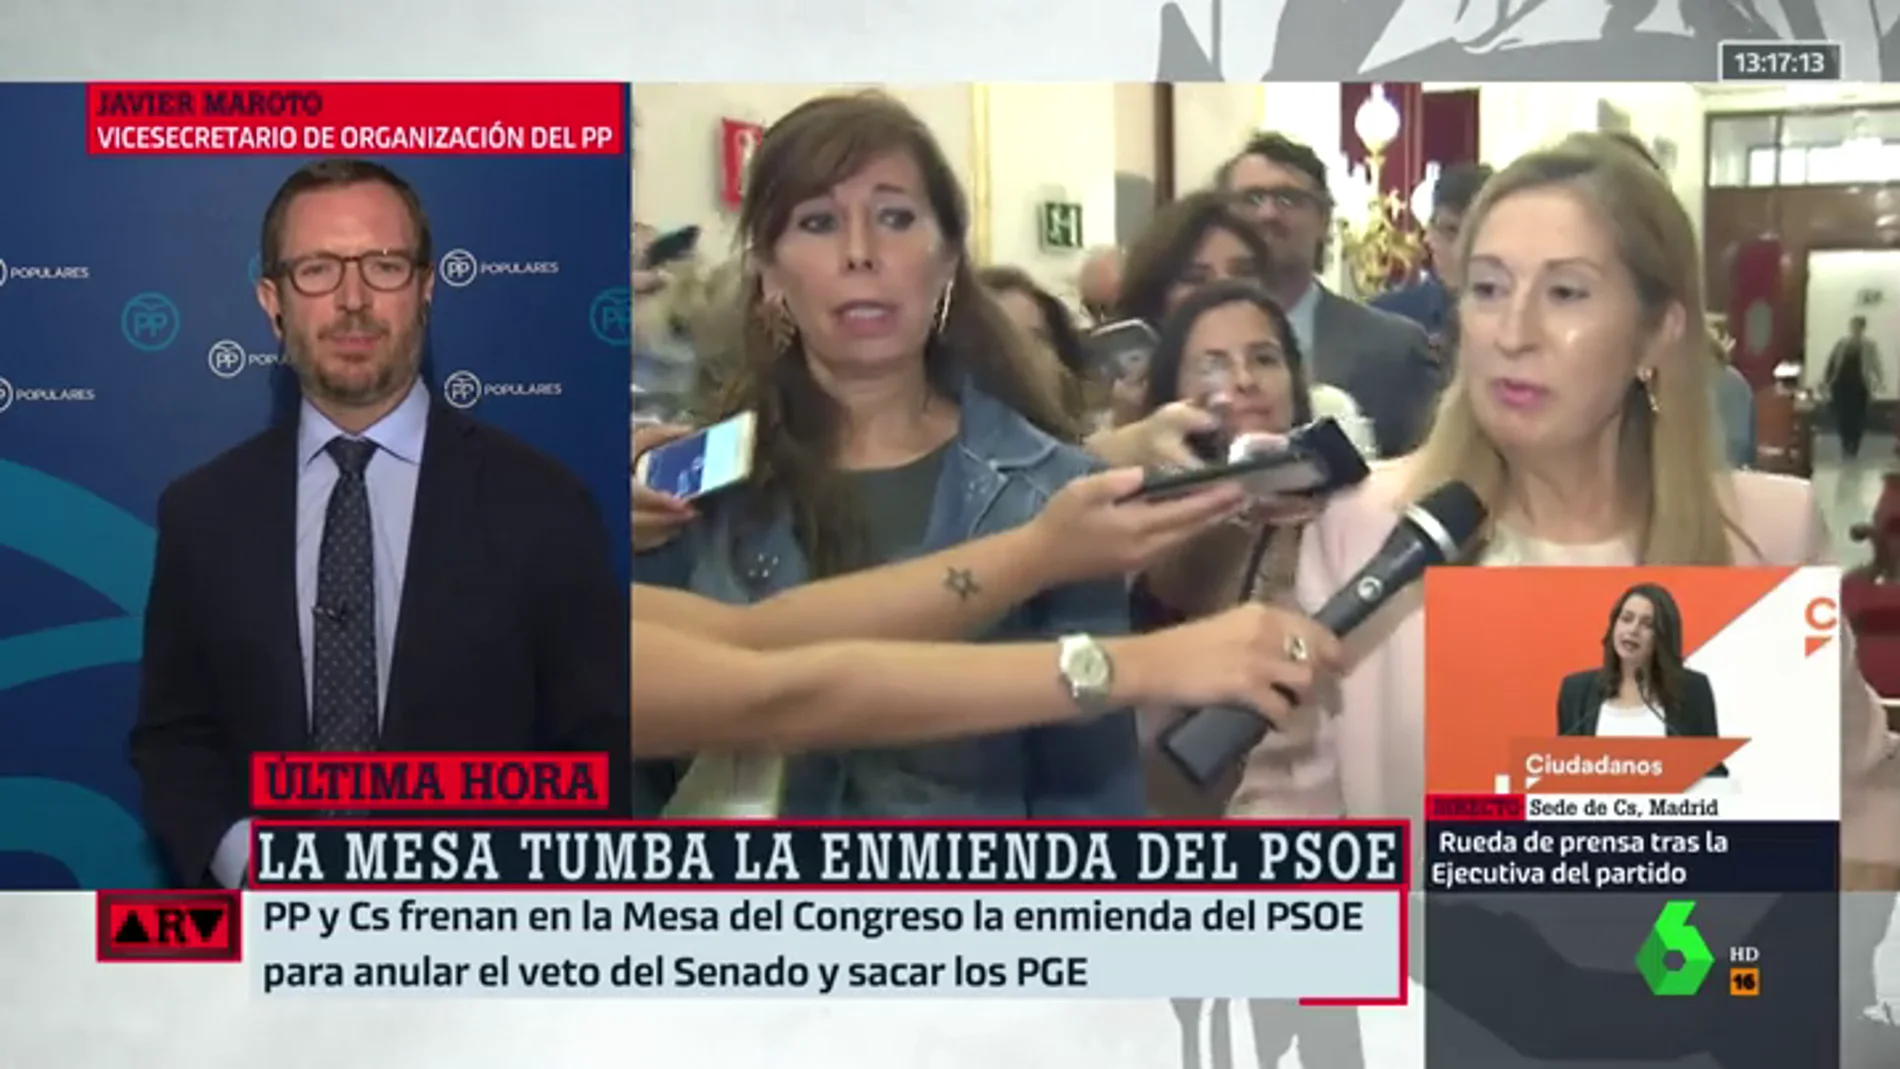 Javier Maroto, tras tumbar la enmienda del PSOE sobre los Presupuestos: "España necesita elecciones generales ya"